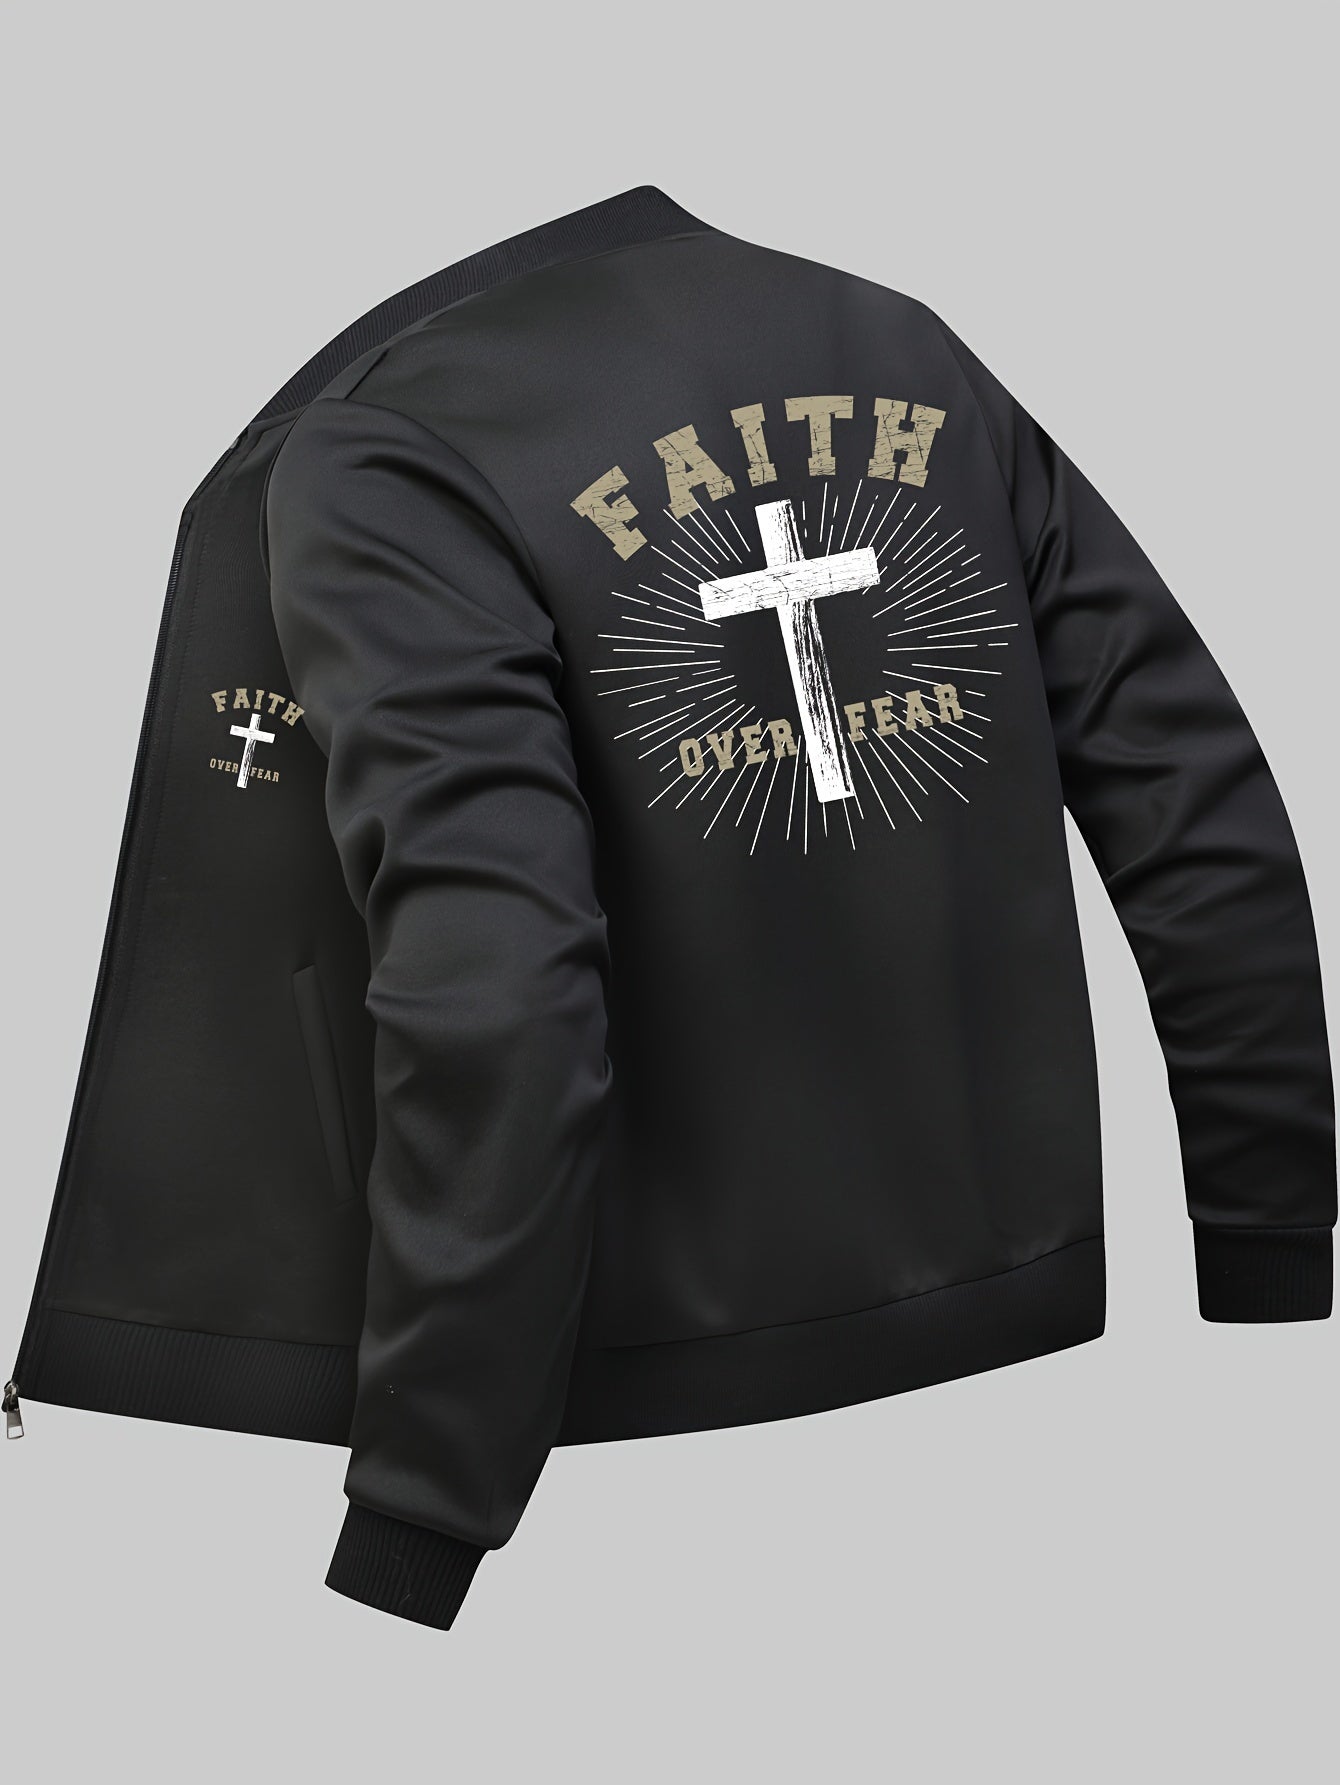 Faith Over Fear Men's Christian Jacket claimedbygoddesigns